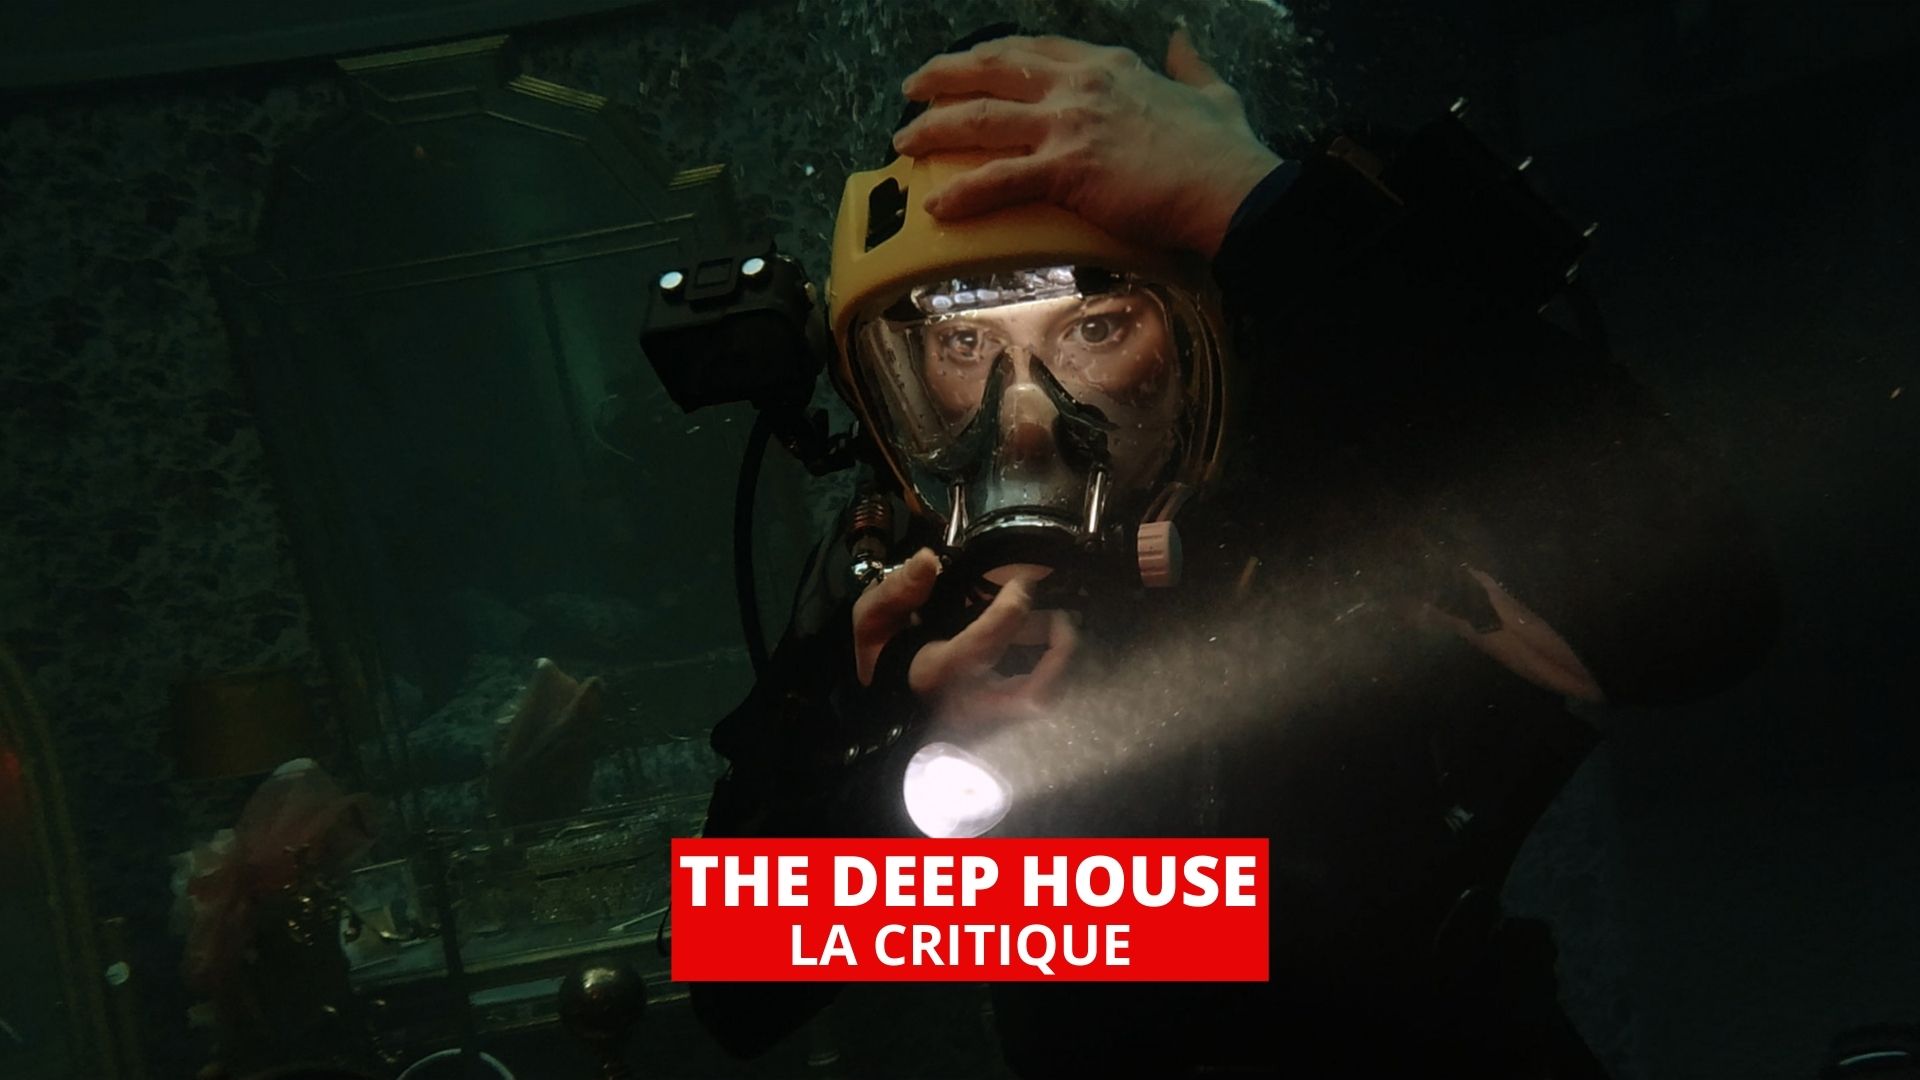 The Deep House : un cauchemar en apnée au coeur de l'horreur